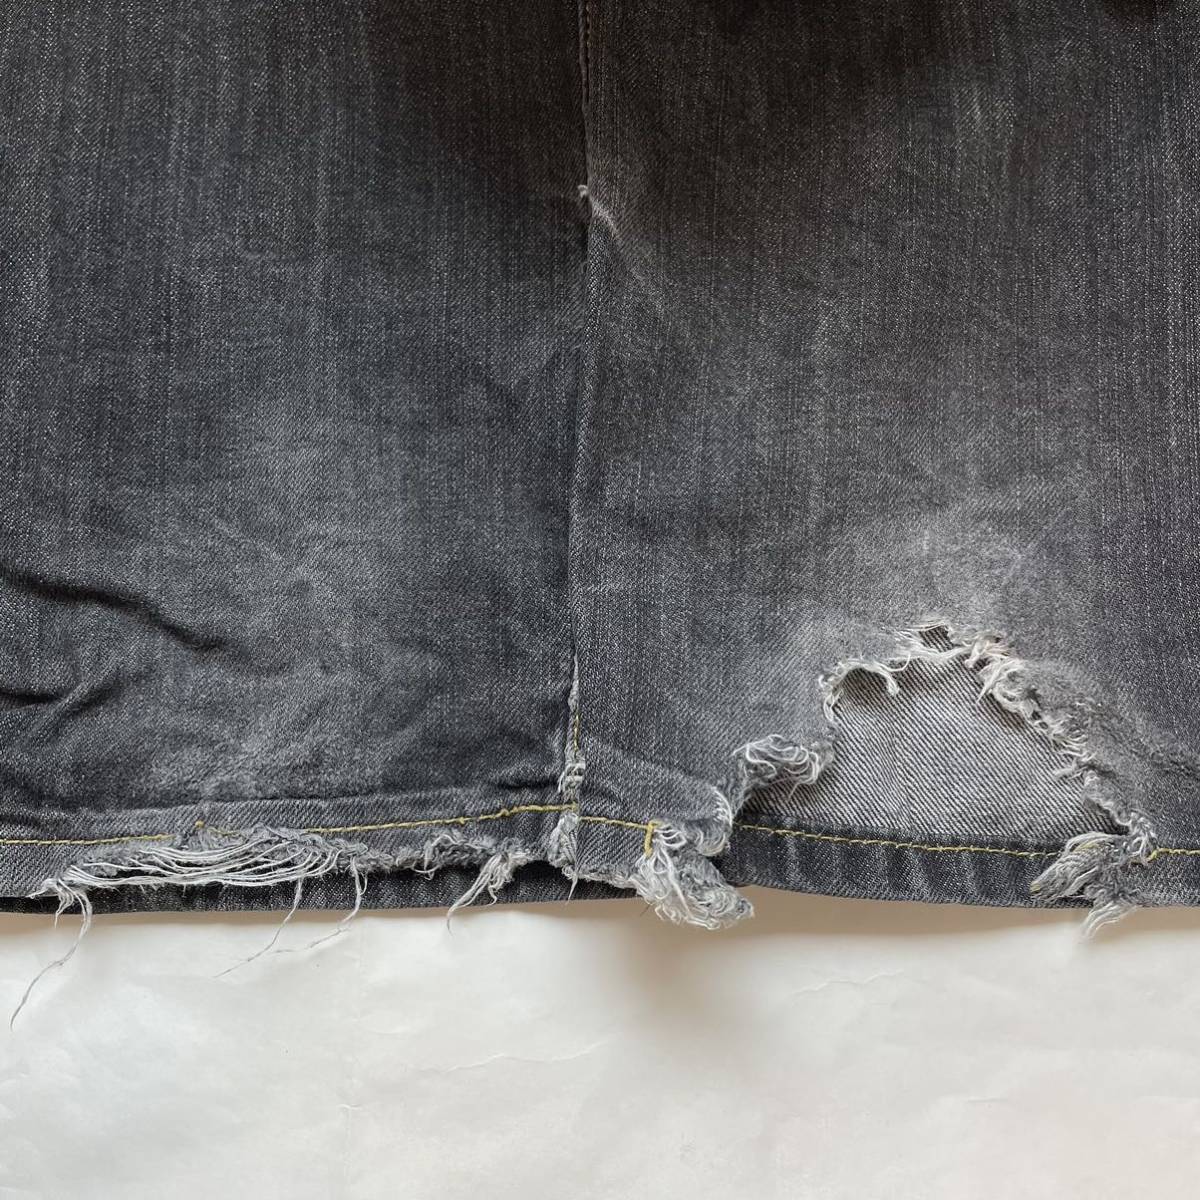 *LRGe искусственная приманка ruji-* Denim джинсы G хлеб брюки низ распорка Logo вышивка стежок черный размер 32 /TT6297